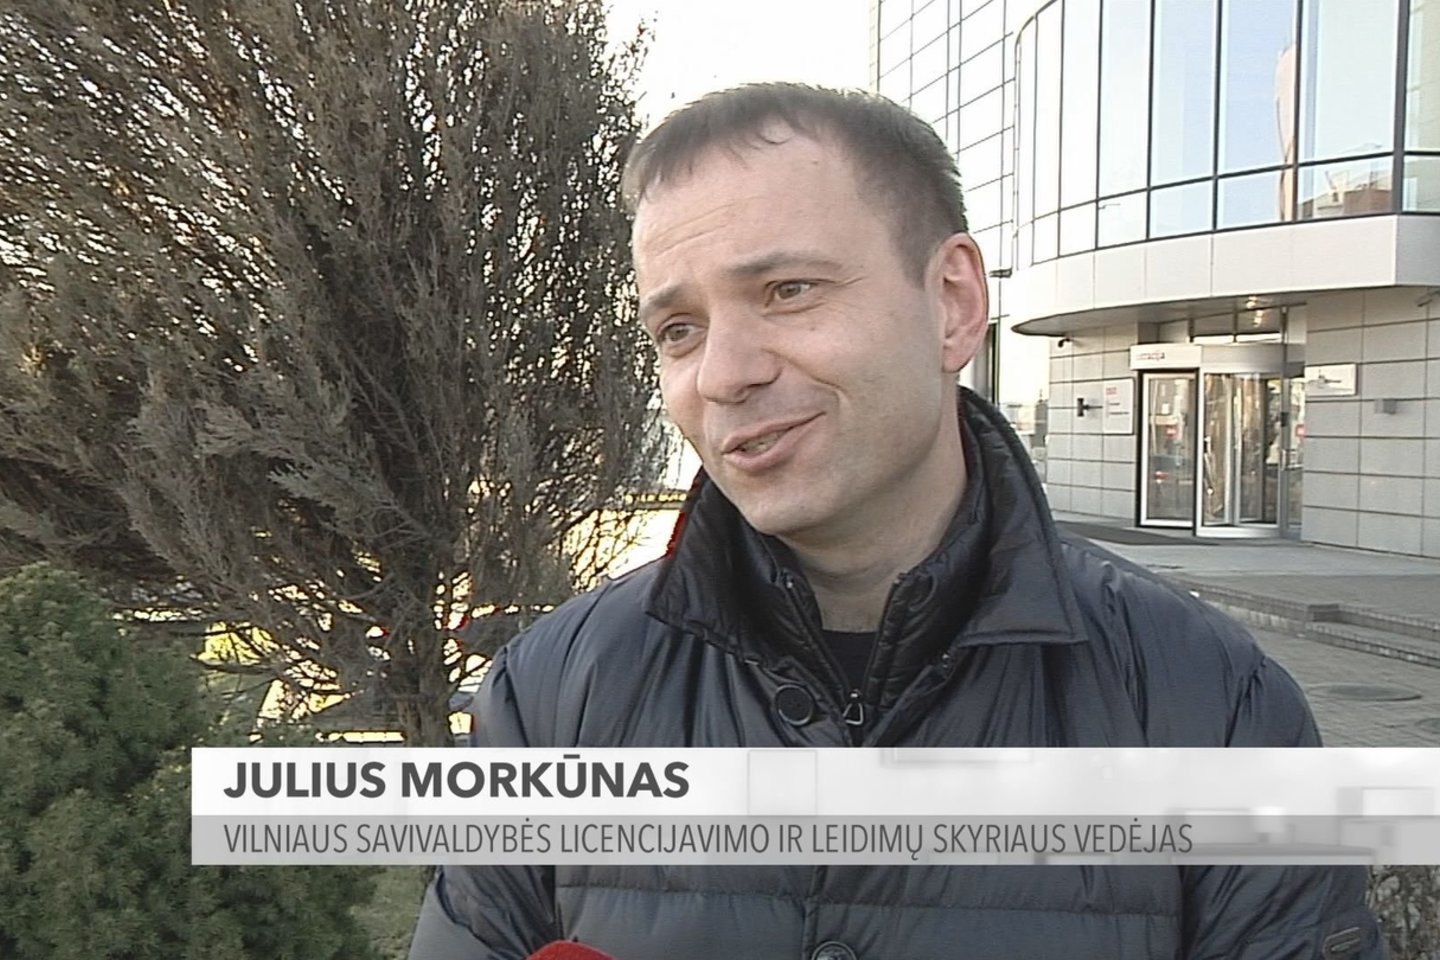 Vilniaus savivaldybės licencijavimo ir leidimų skyriaus vedėjas J.Morkūnas.<br>Stop kadras.